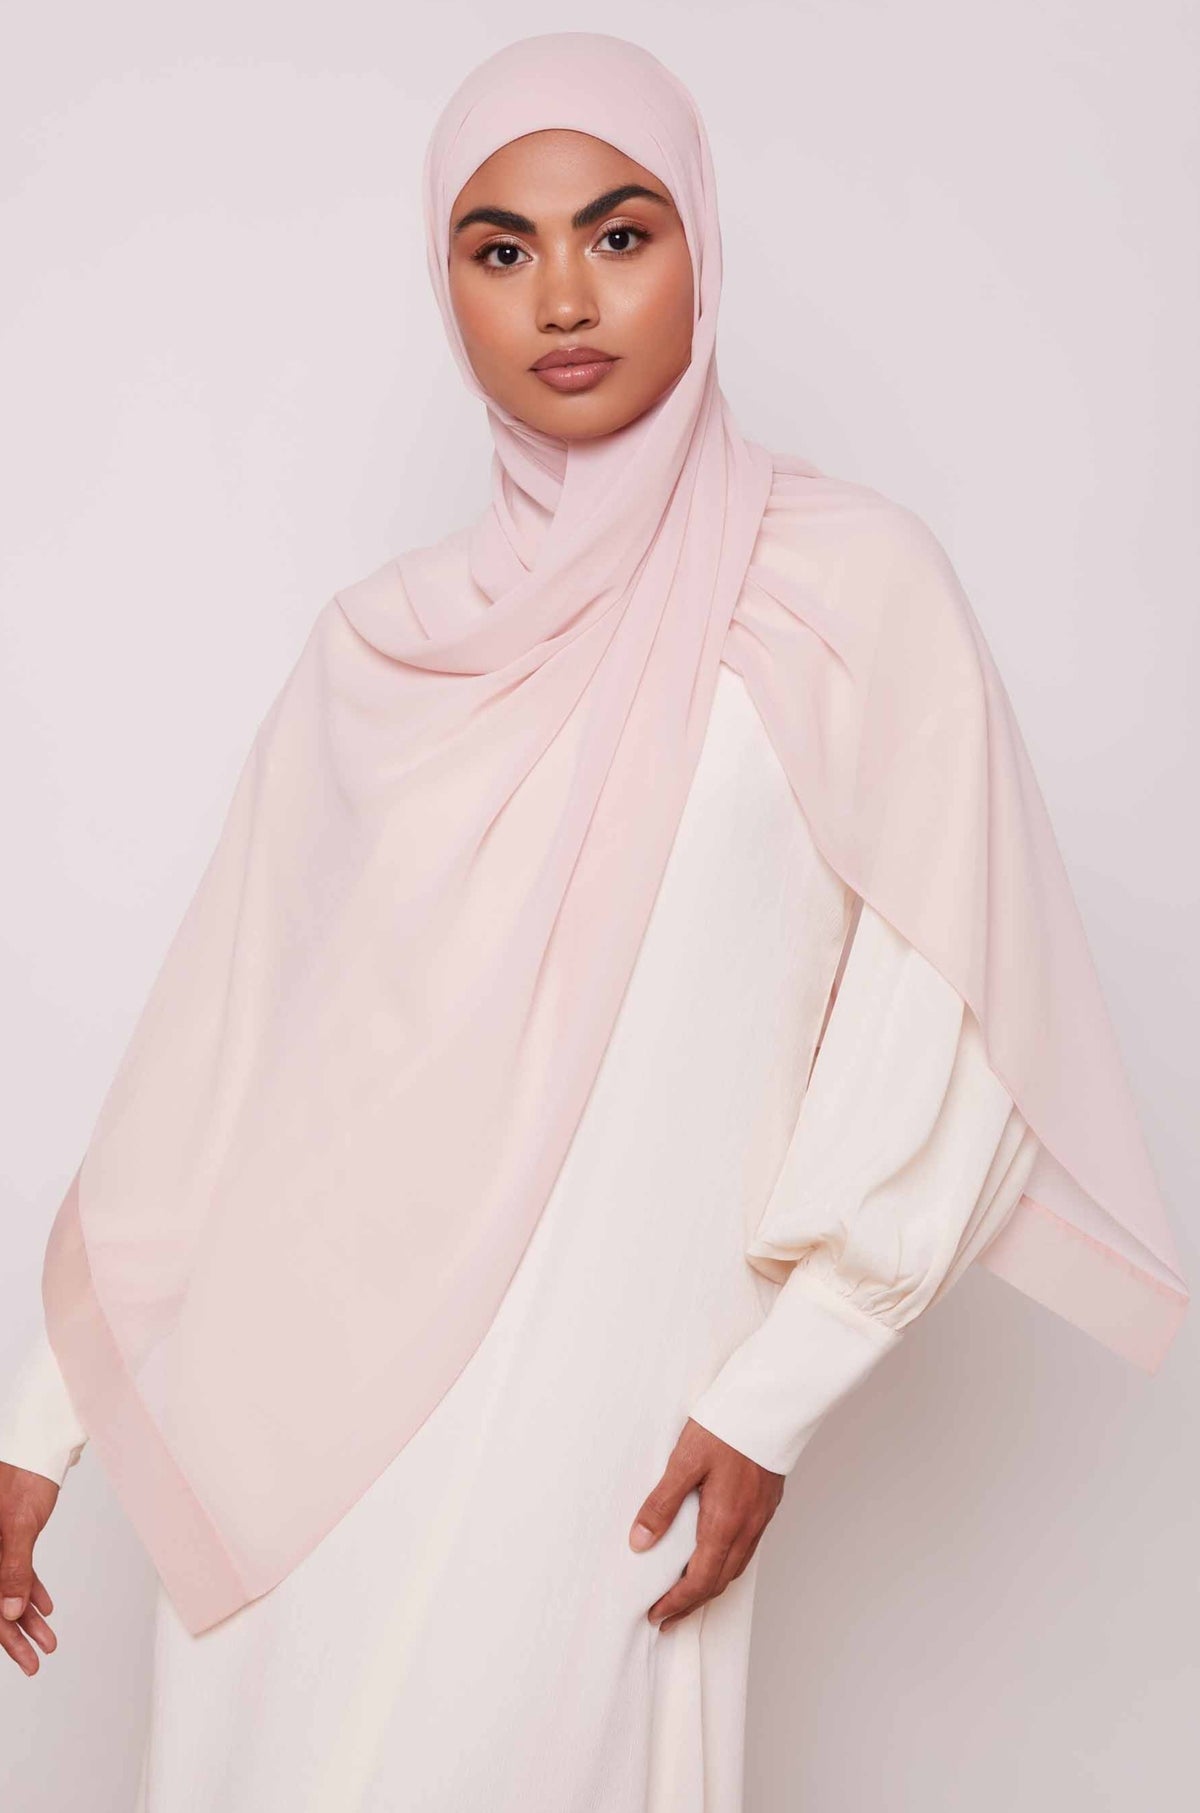 Chiffon Organza Trim Hijab - Sepia Rose Accessories saigonodysseyhotel 